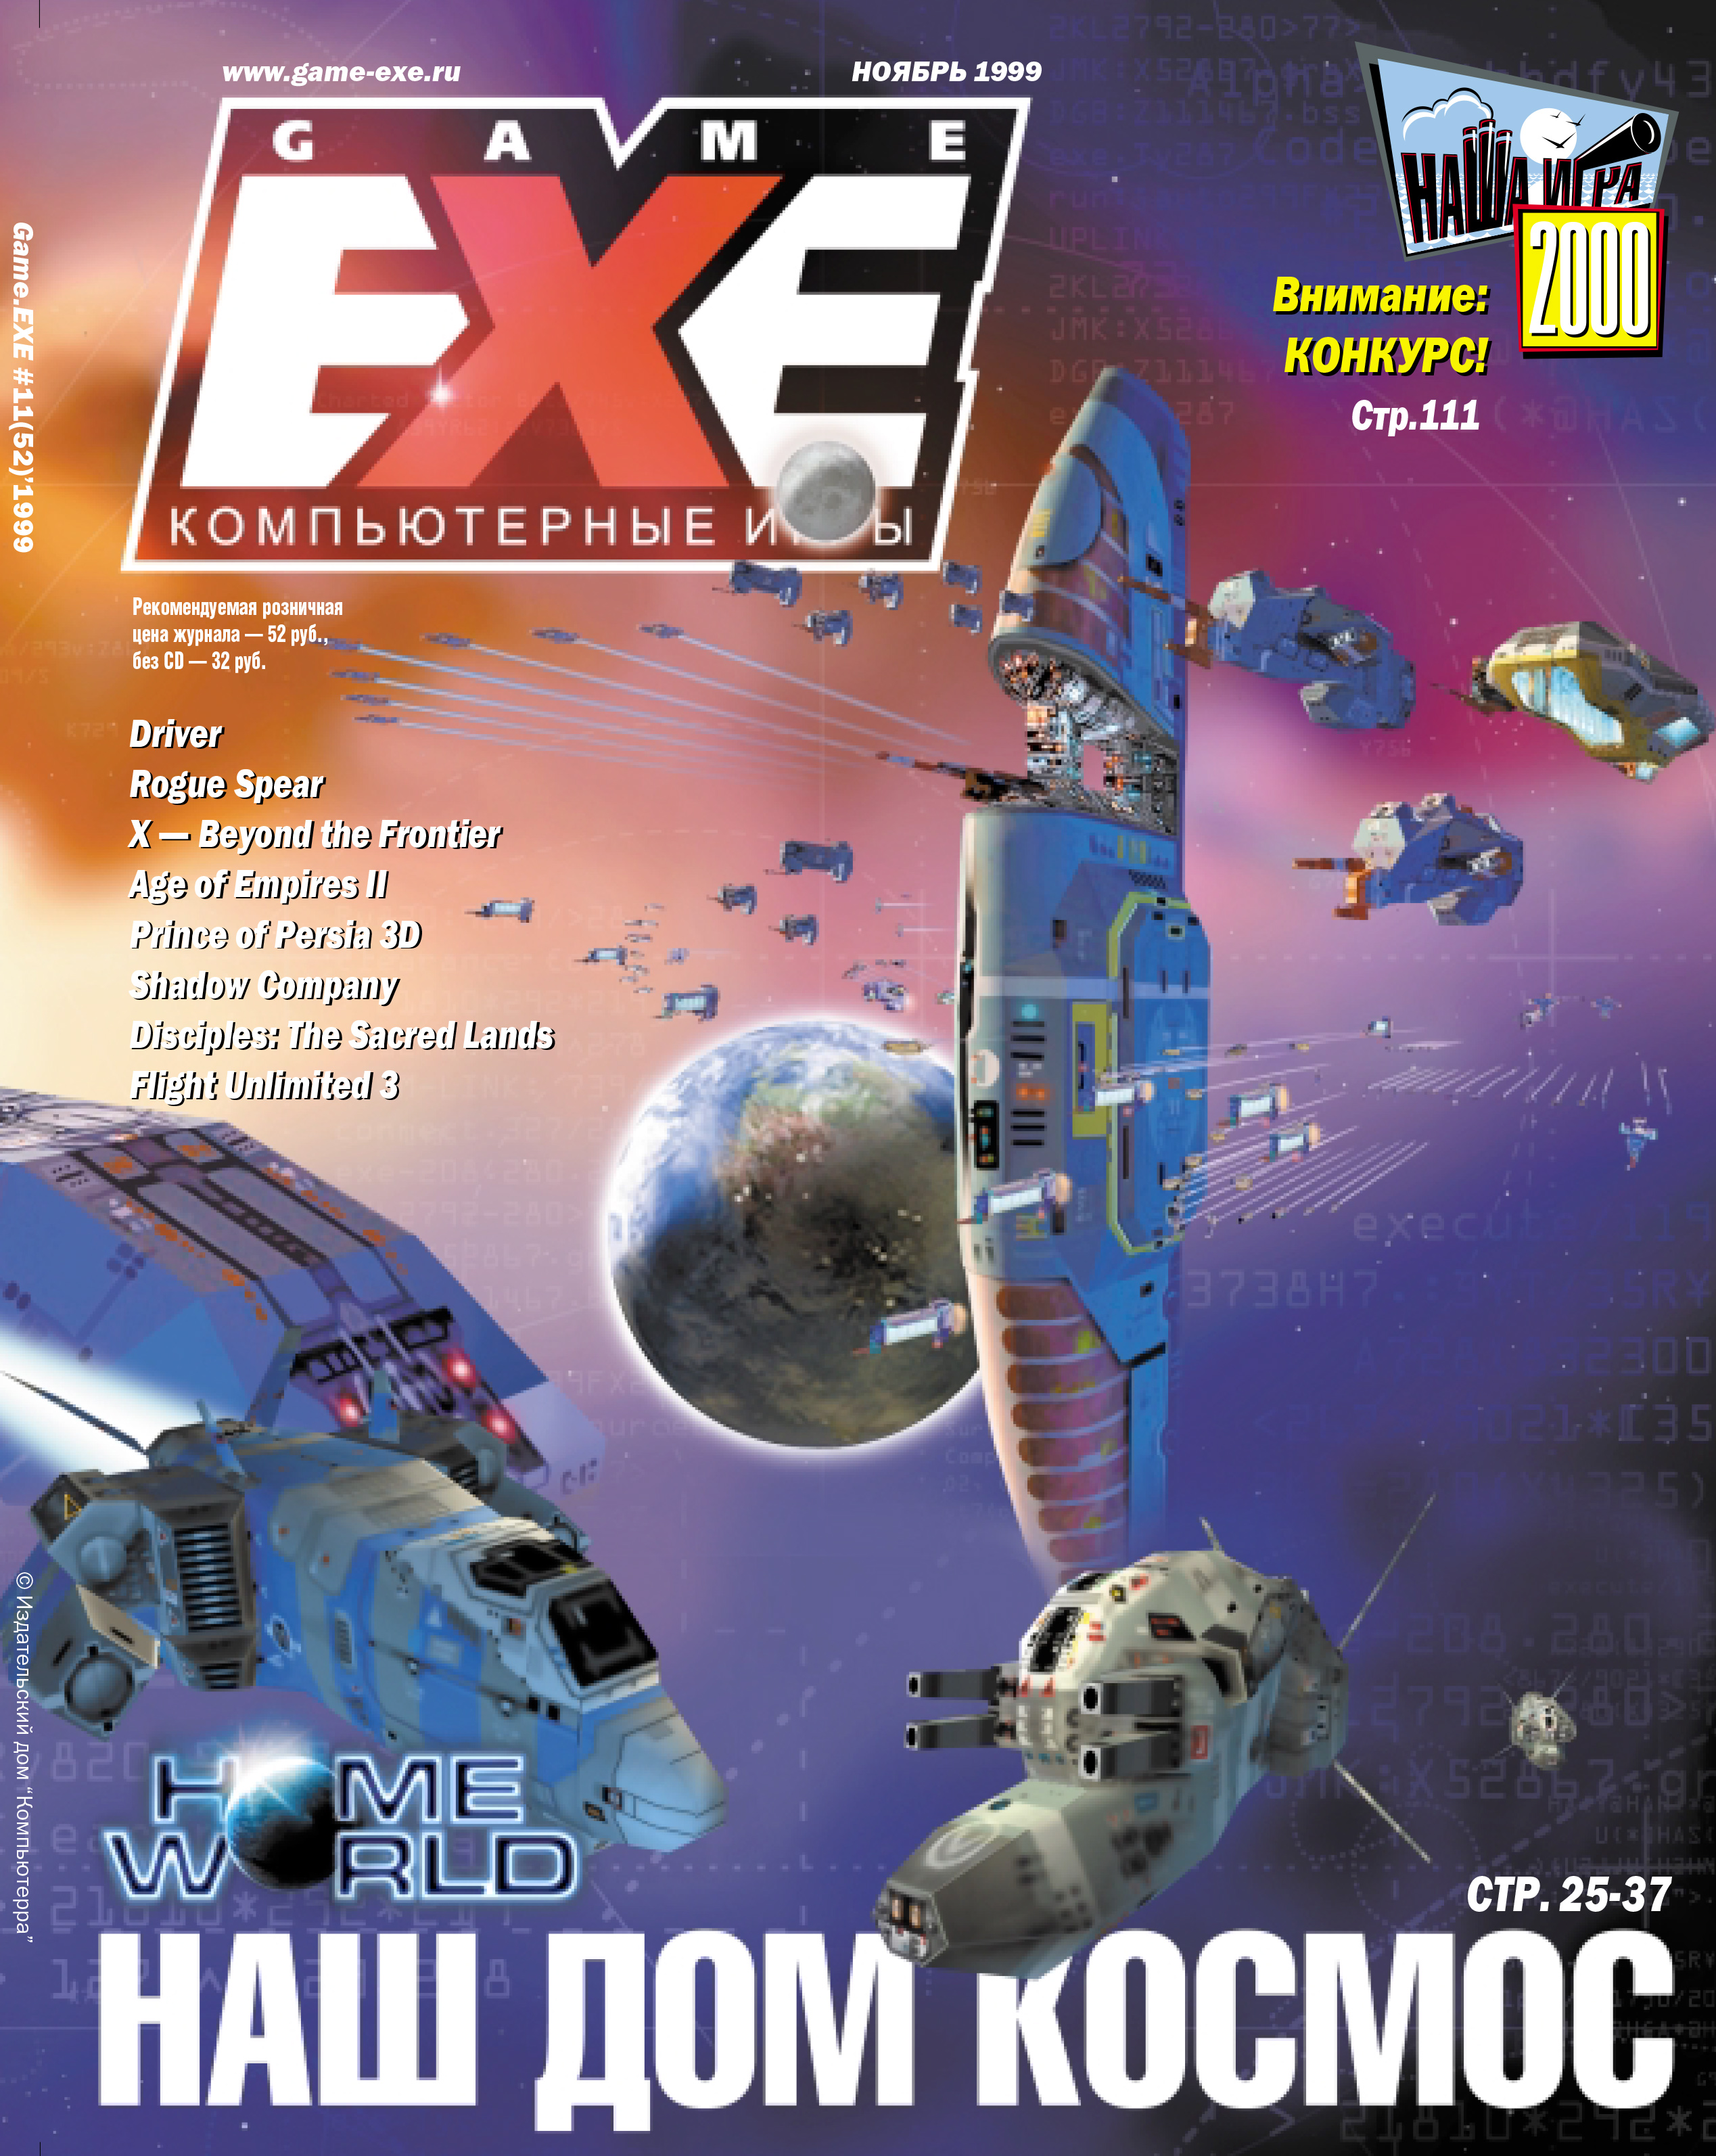 Download game exe. 1999.Exe. Game.exe. Game exe журнал. Game.exe журнал 2000.